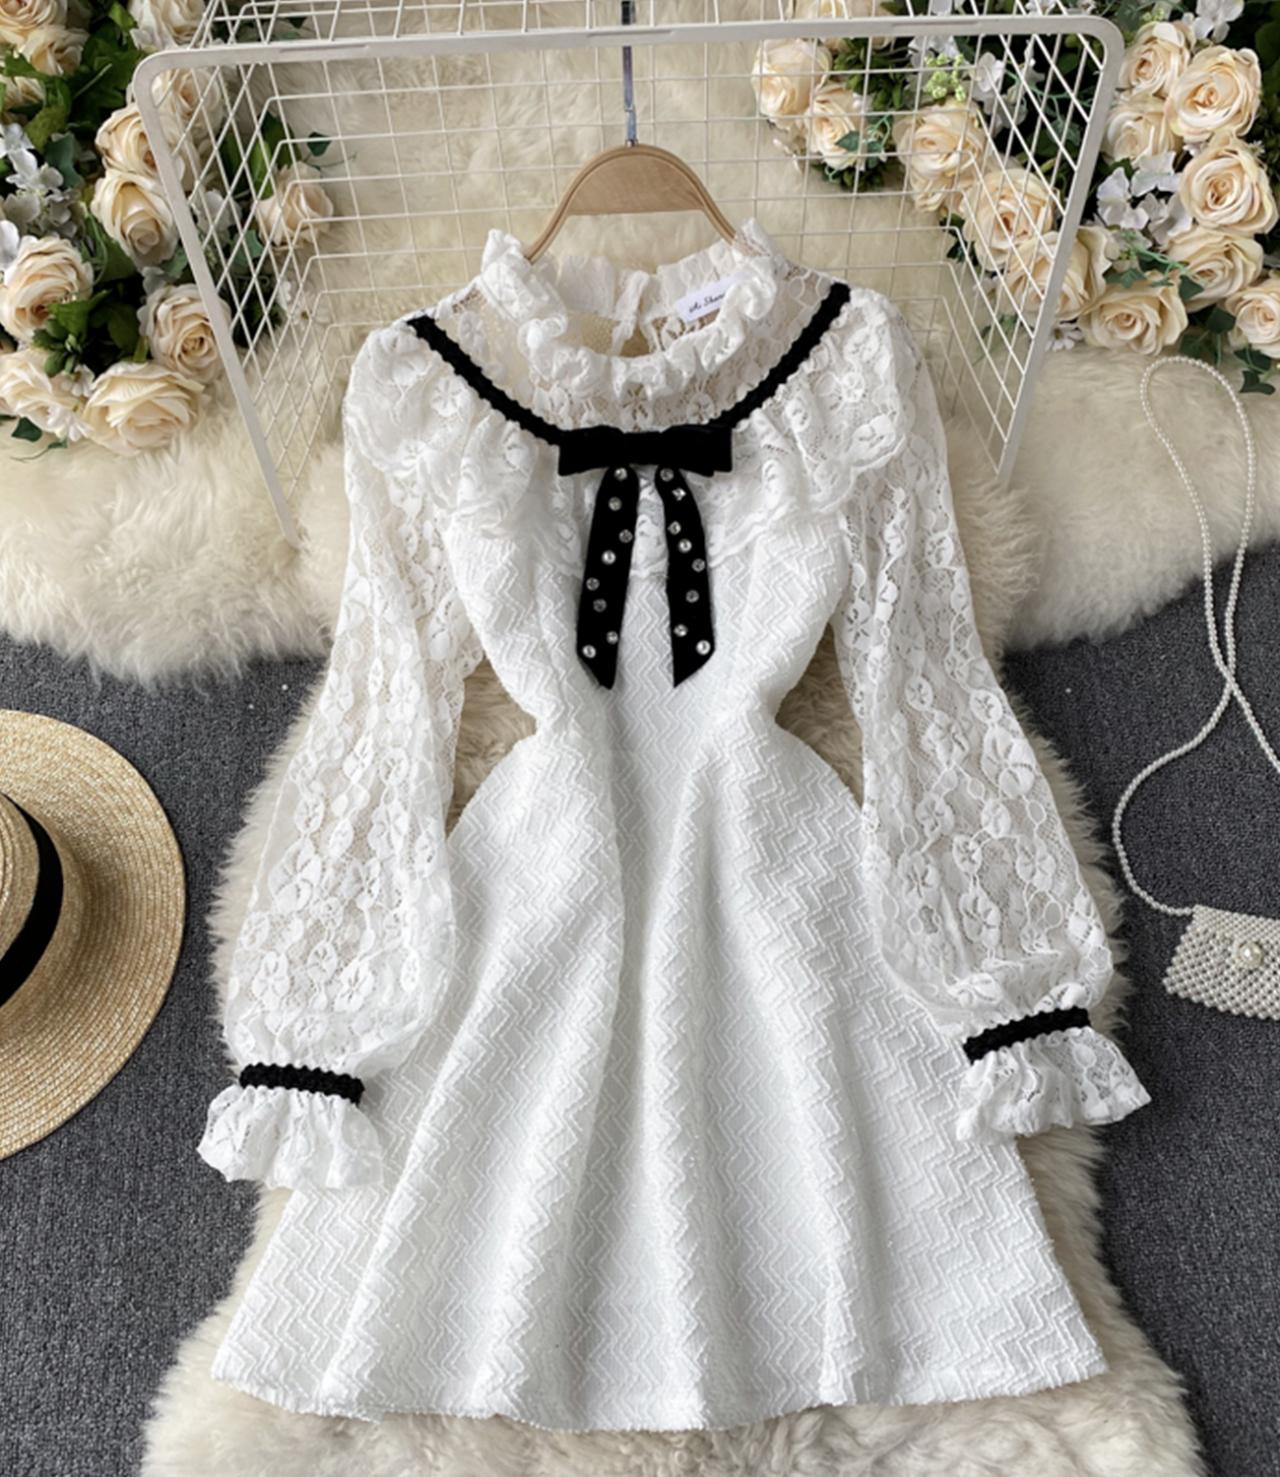 Cute A line lace dress long sleeve dress